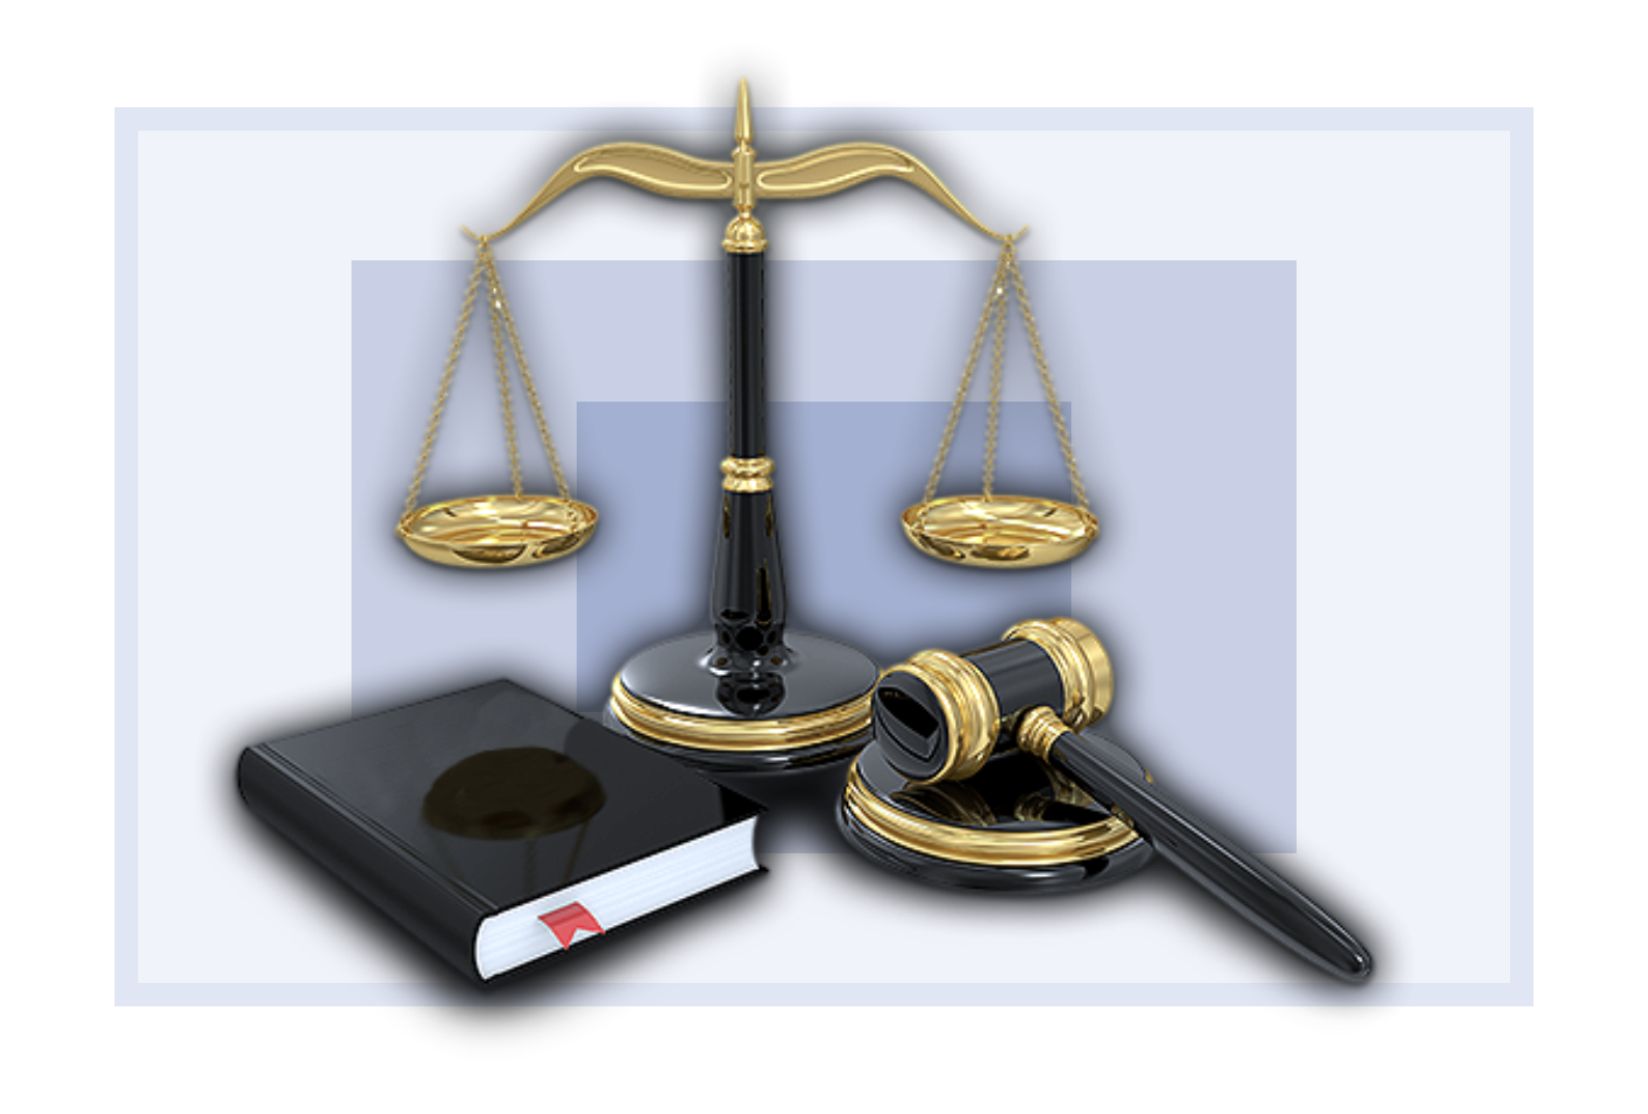 Порядок предоставления бесплатной юридической помощи гражданам  в рамках государственной системы бесплатной юридической помощи